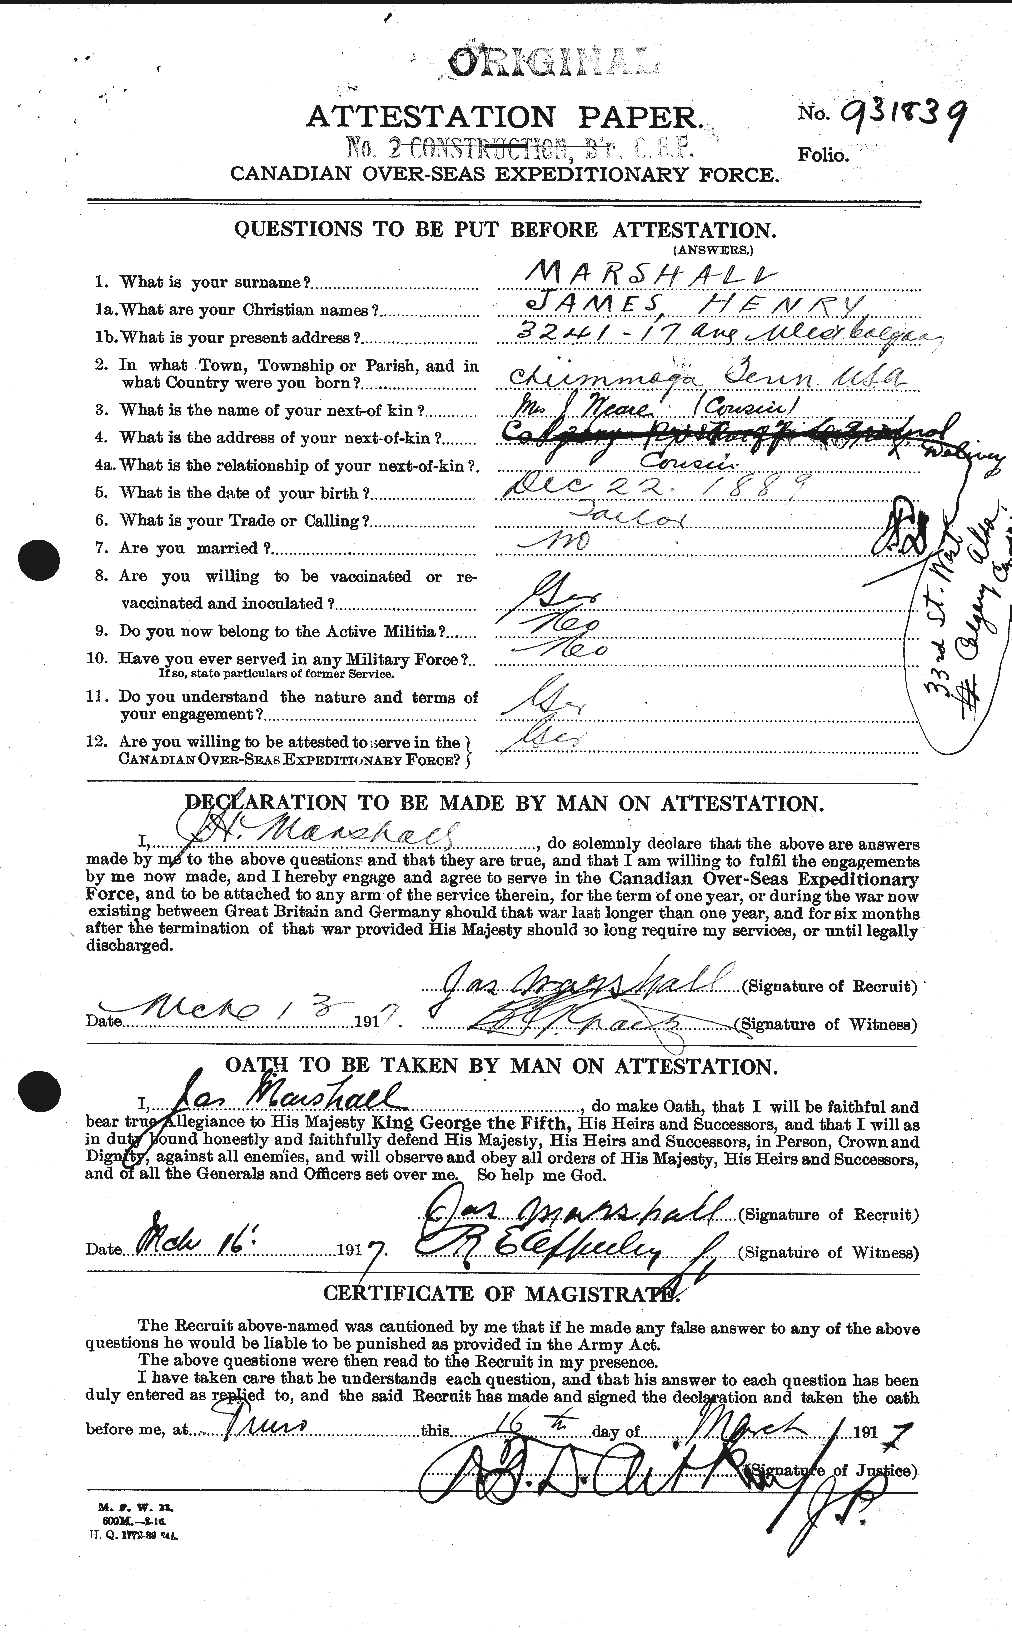 Dossiers du Personnel de la Première Guerre mondiale - CEC 484344a